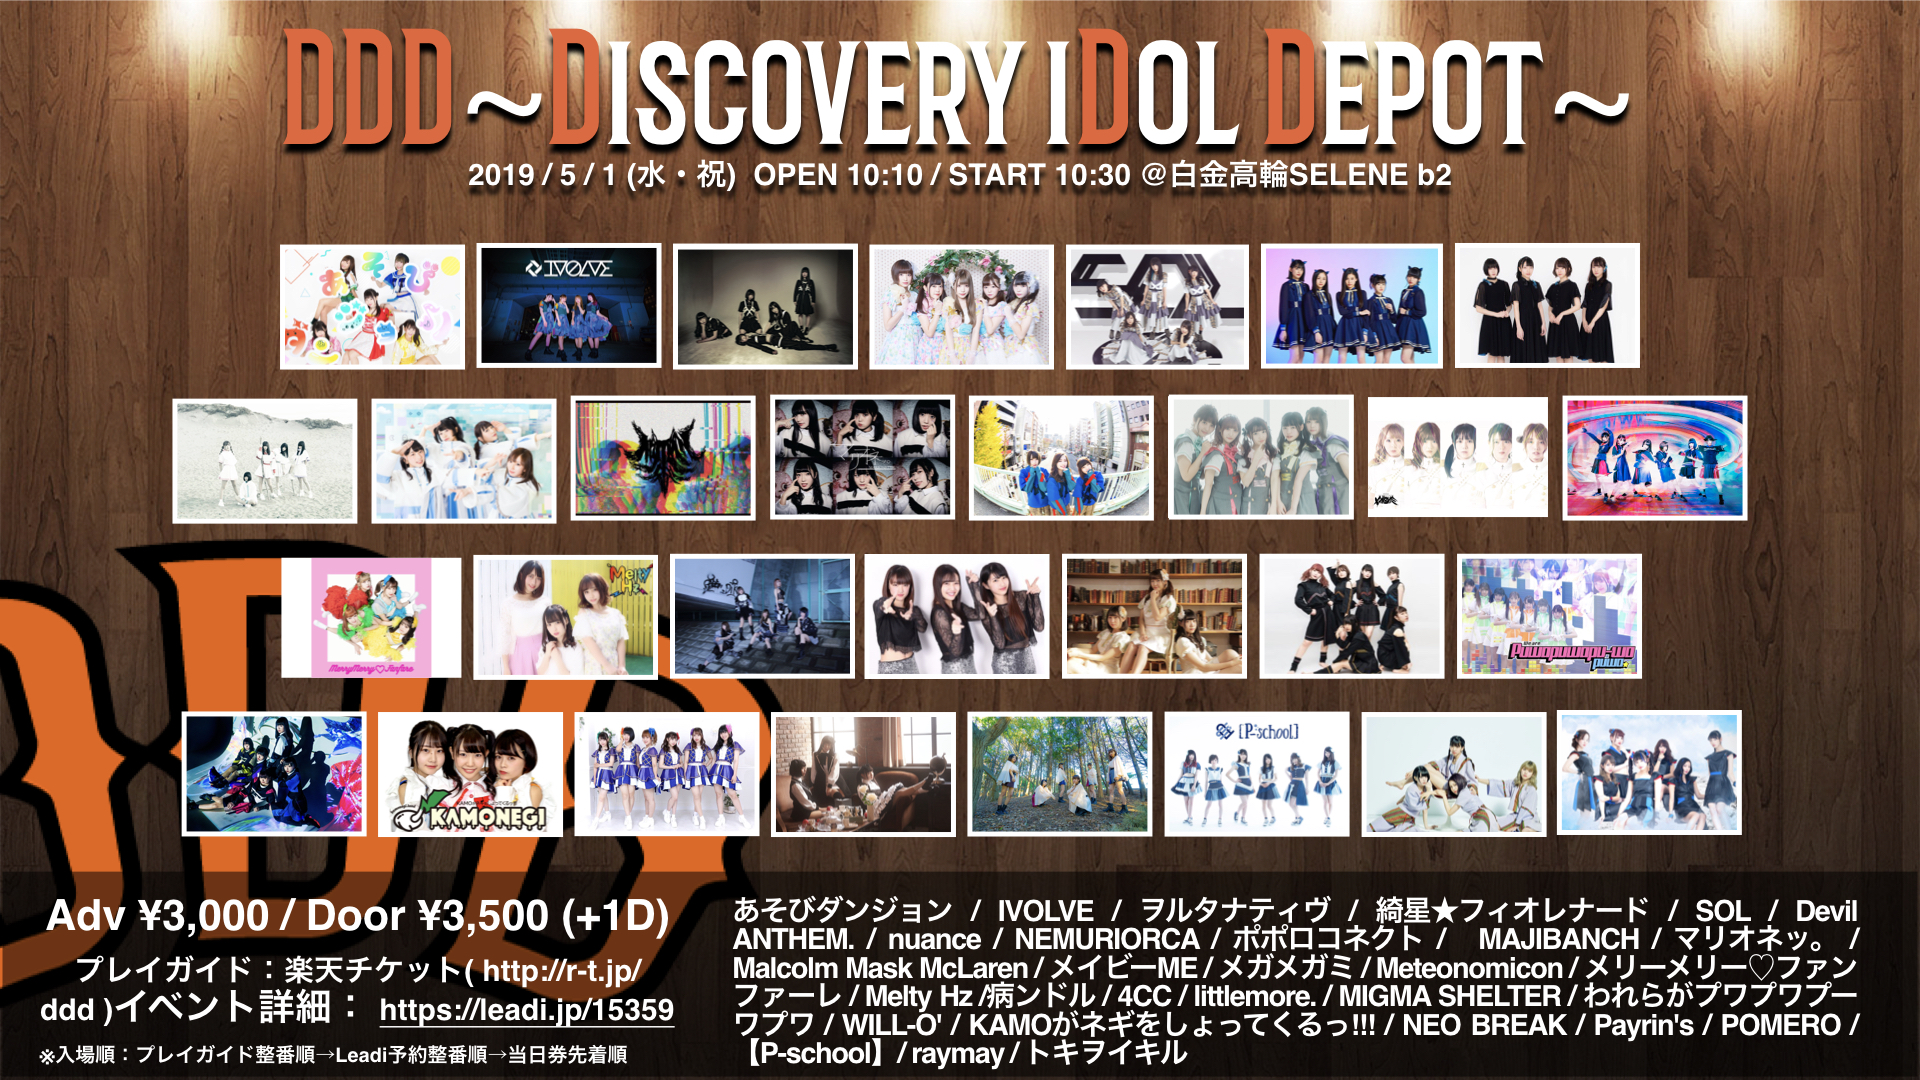 「DDD~Discovery iDol Depot~」 タイムテーブル